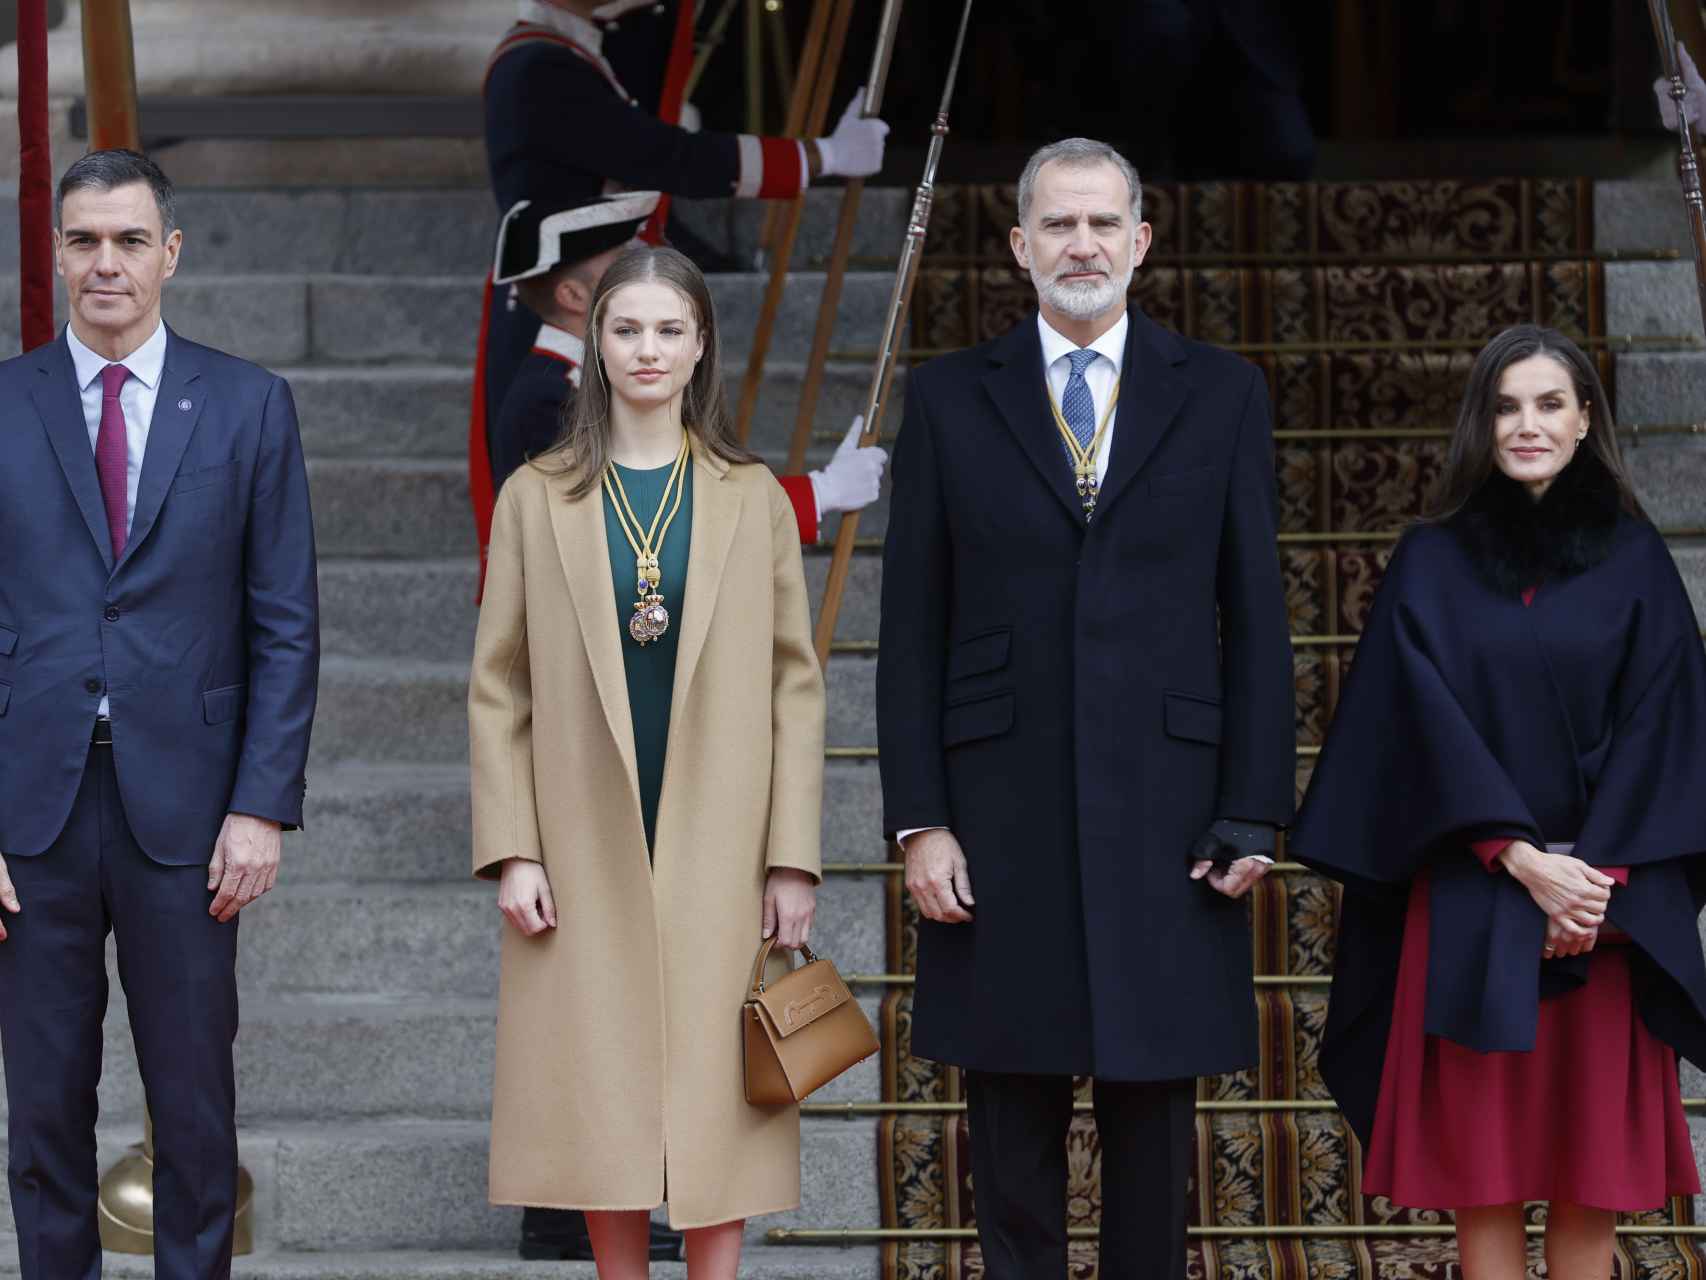 Los reyes Felipe y Letizia junto a la princesa de Asturias, Leonor, y el presidente del Gobierno, Pedro Sánchez, a su llegada a la solemne apertura de la XV Legislatura.